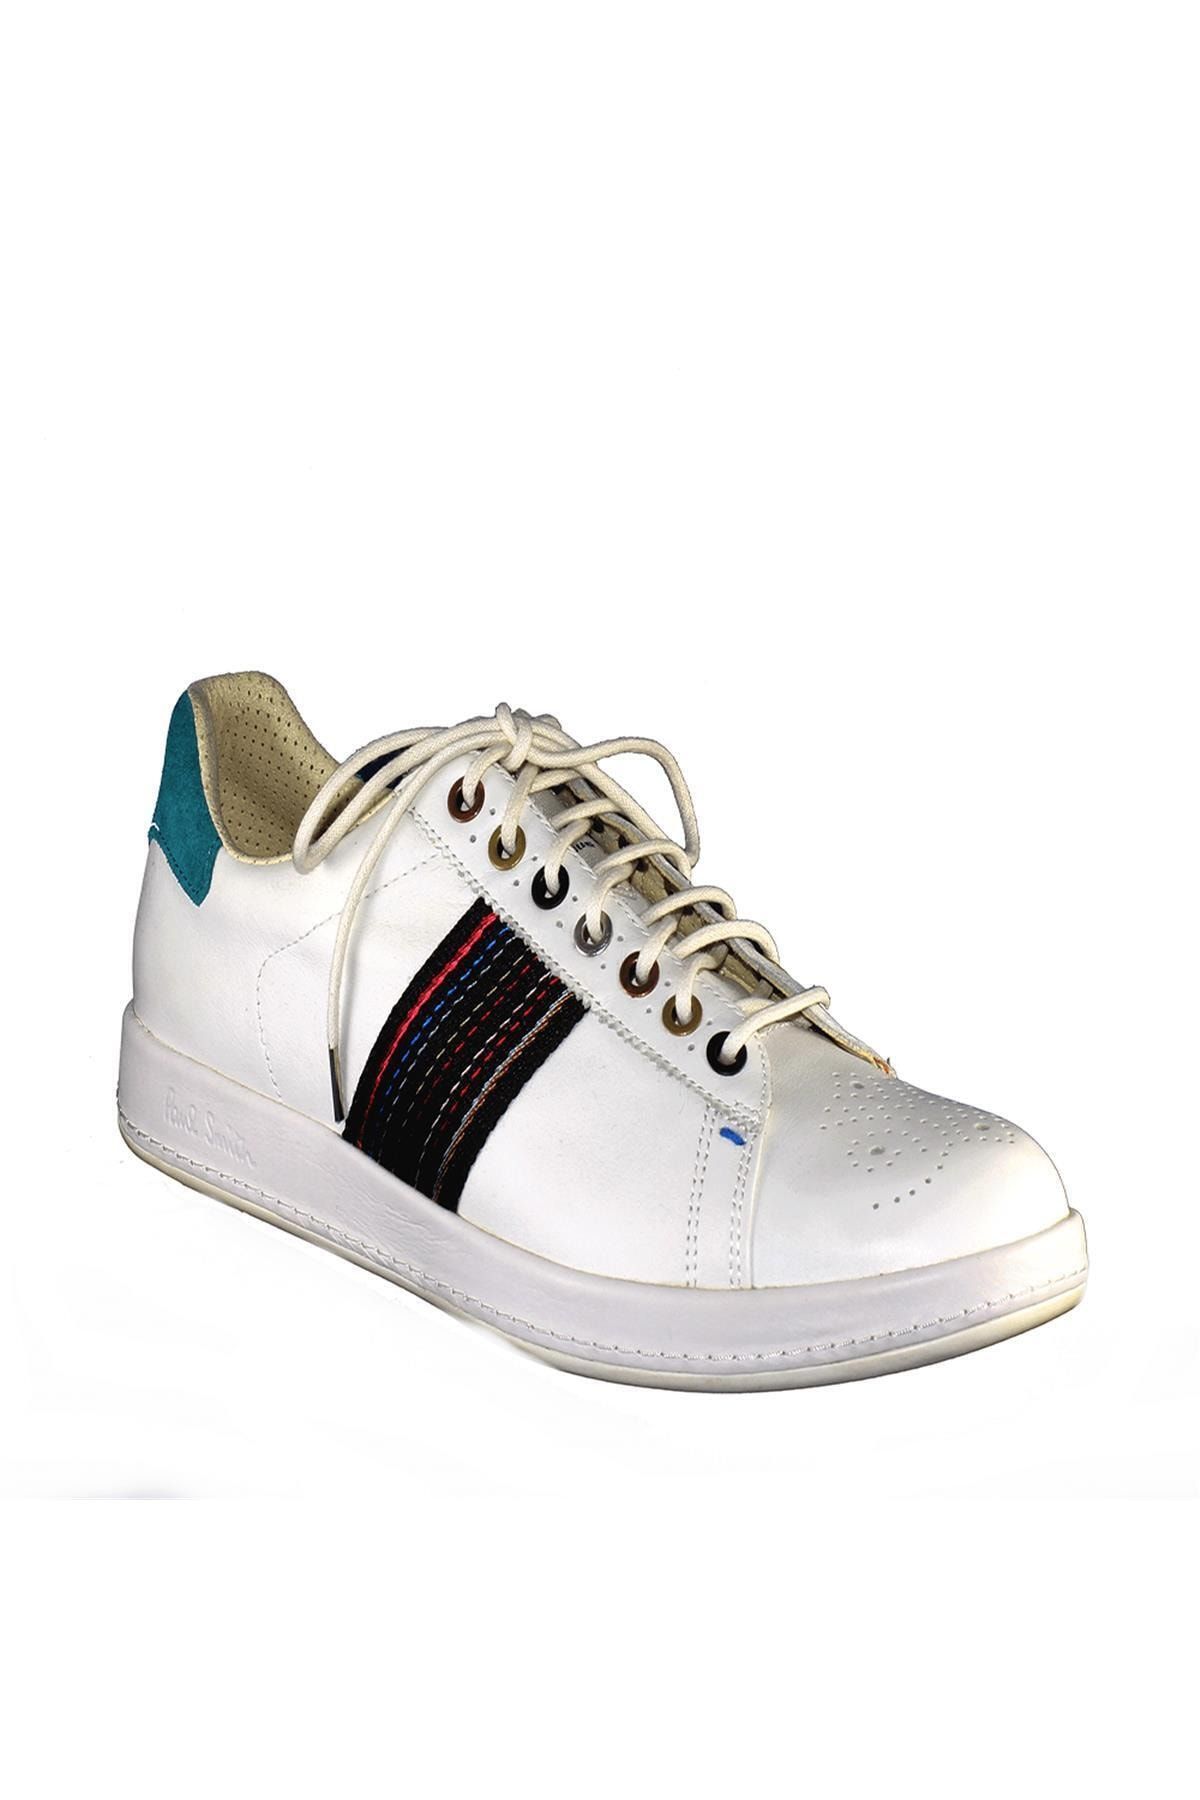 Paul Smith Erkek Spor Ayakkabı Beyaz Smxg 0245